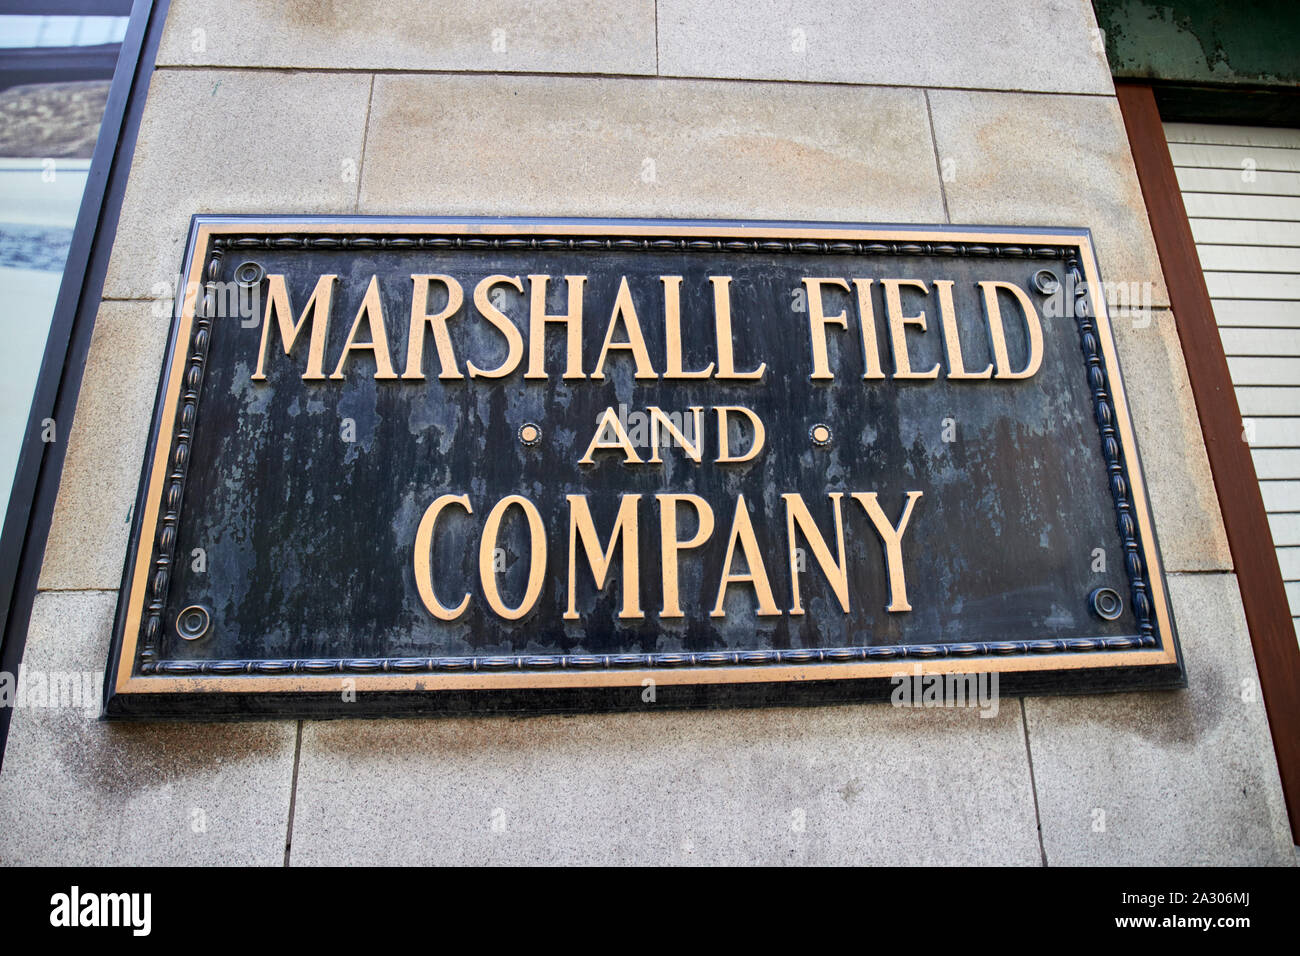 Marshall Field et plaque société macys store Chicago Illinois Etats-Unis d'Amérique Banque D'Images